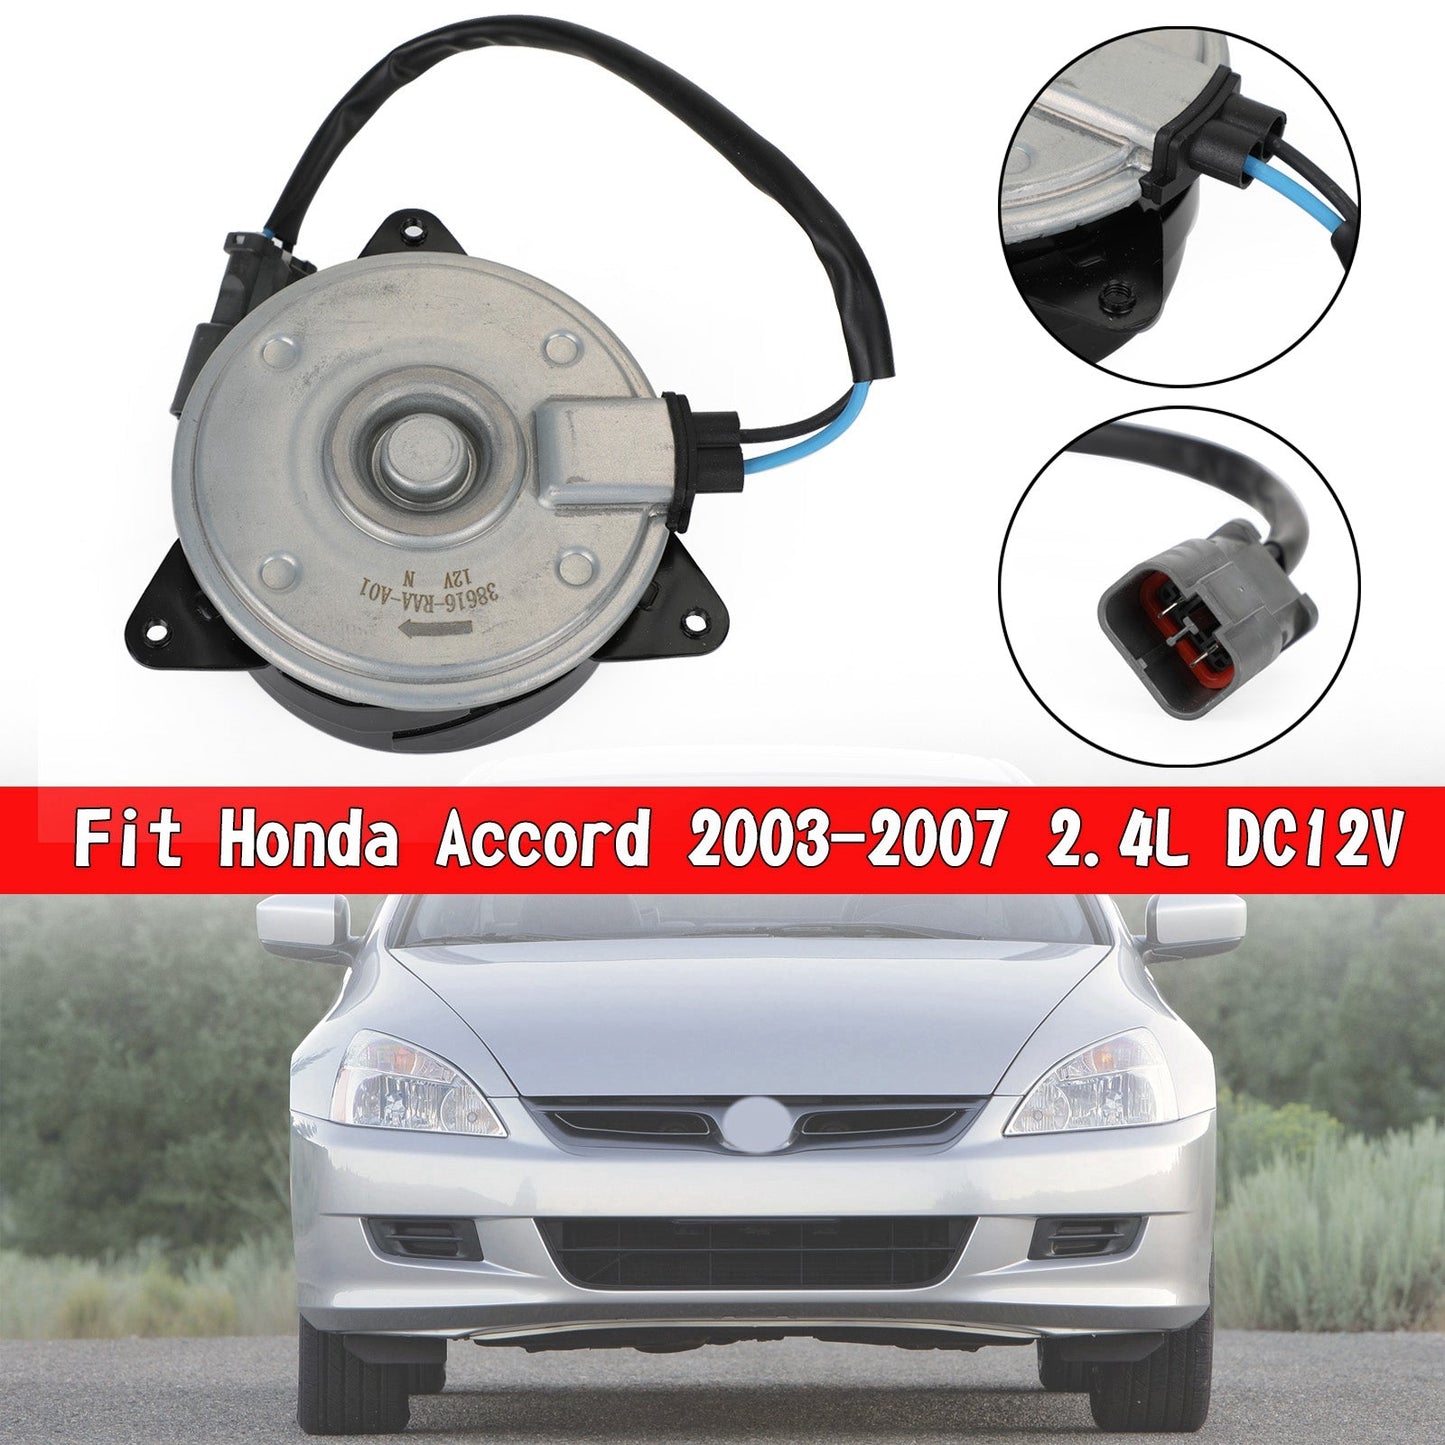 A/C Condenser Fan Motor 38616-RAA-A01 Fit Honda Accord 2003-2007 2.4L DC12V